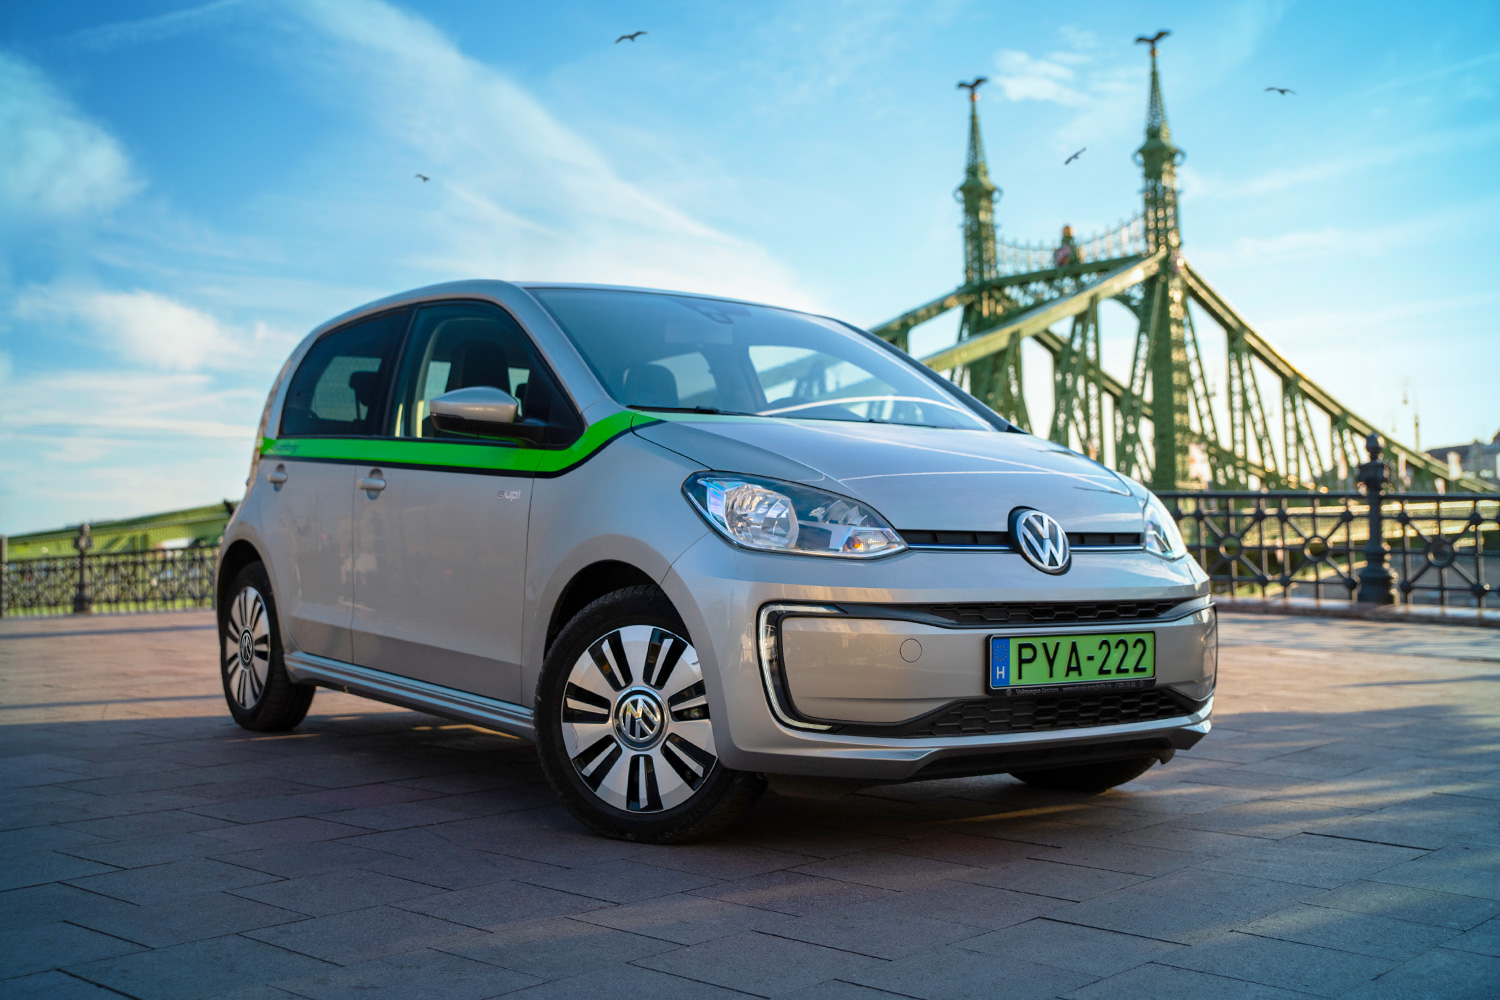 Több mint életérzés – A GreenGo elektromos autóival fedezzük fel Budapestet és környékét